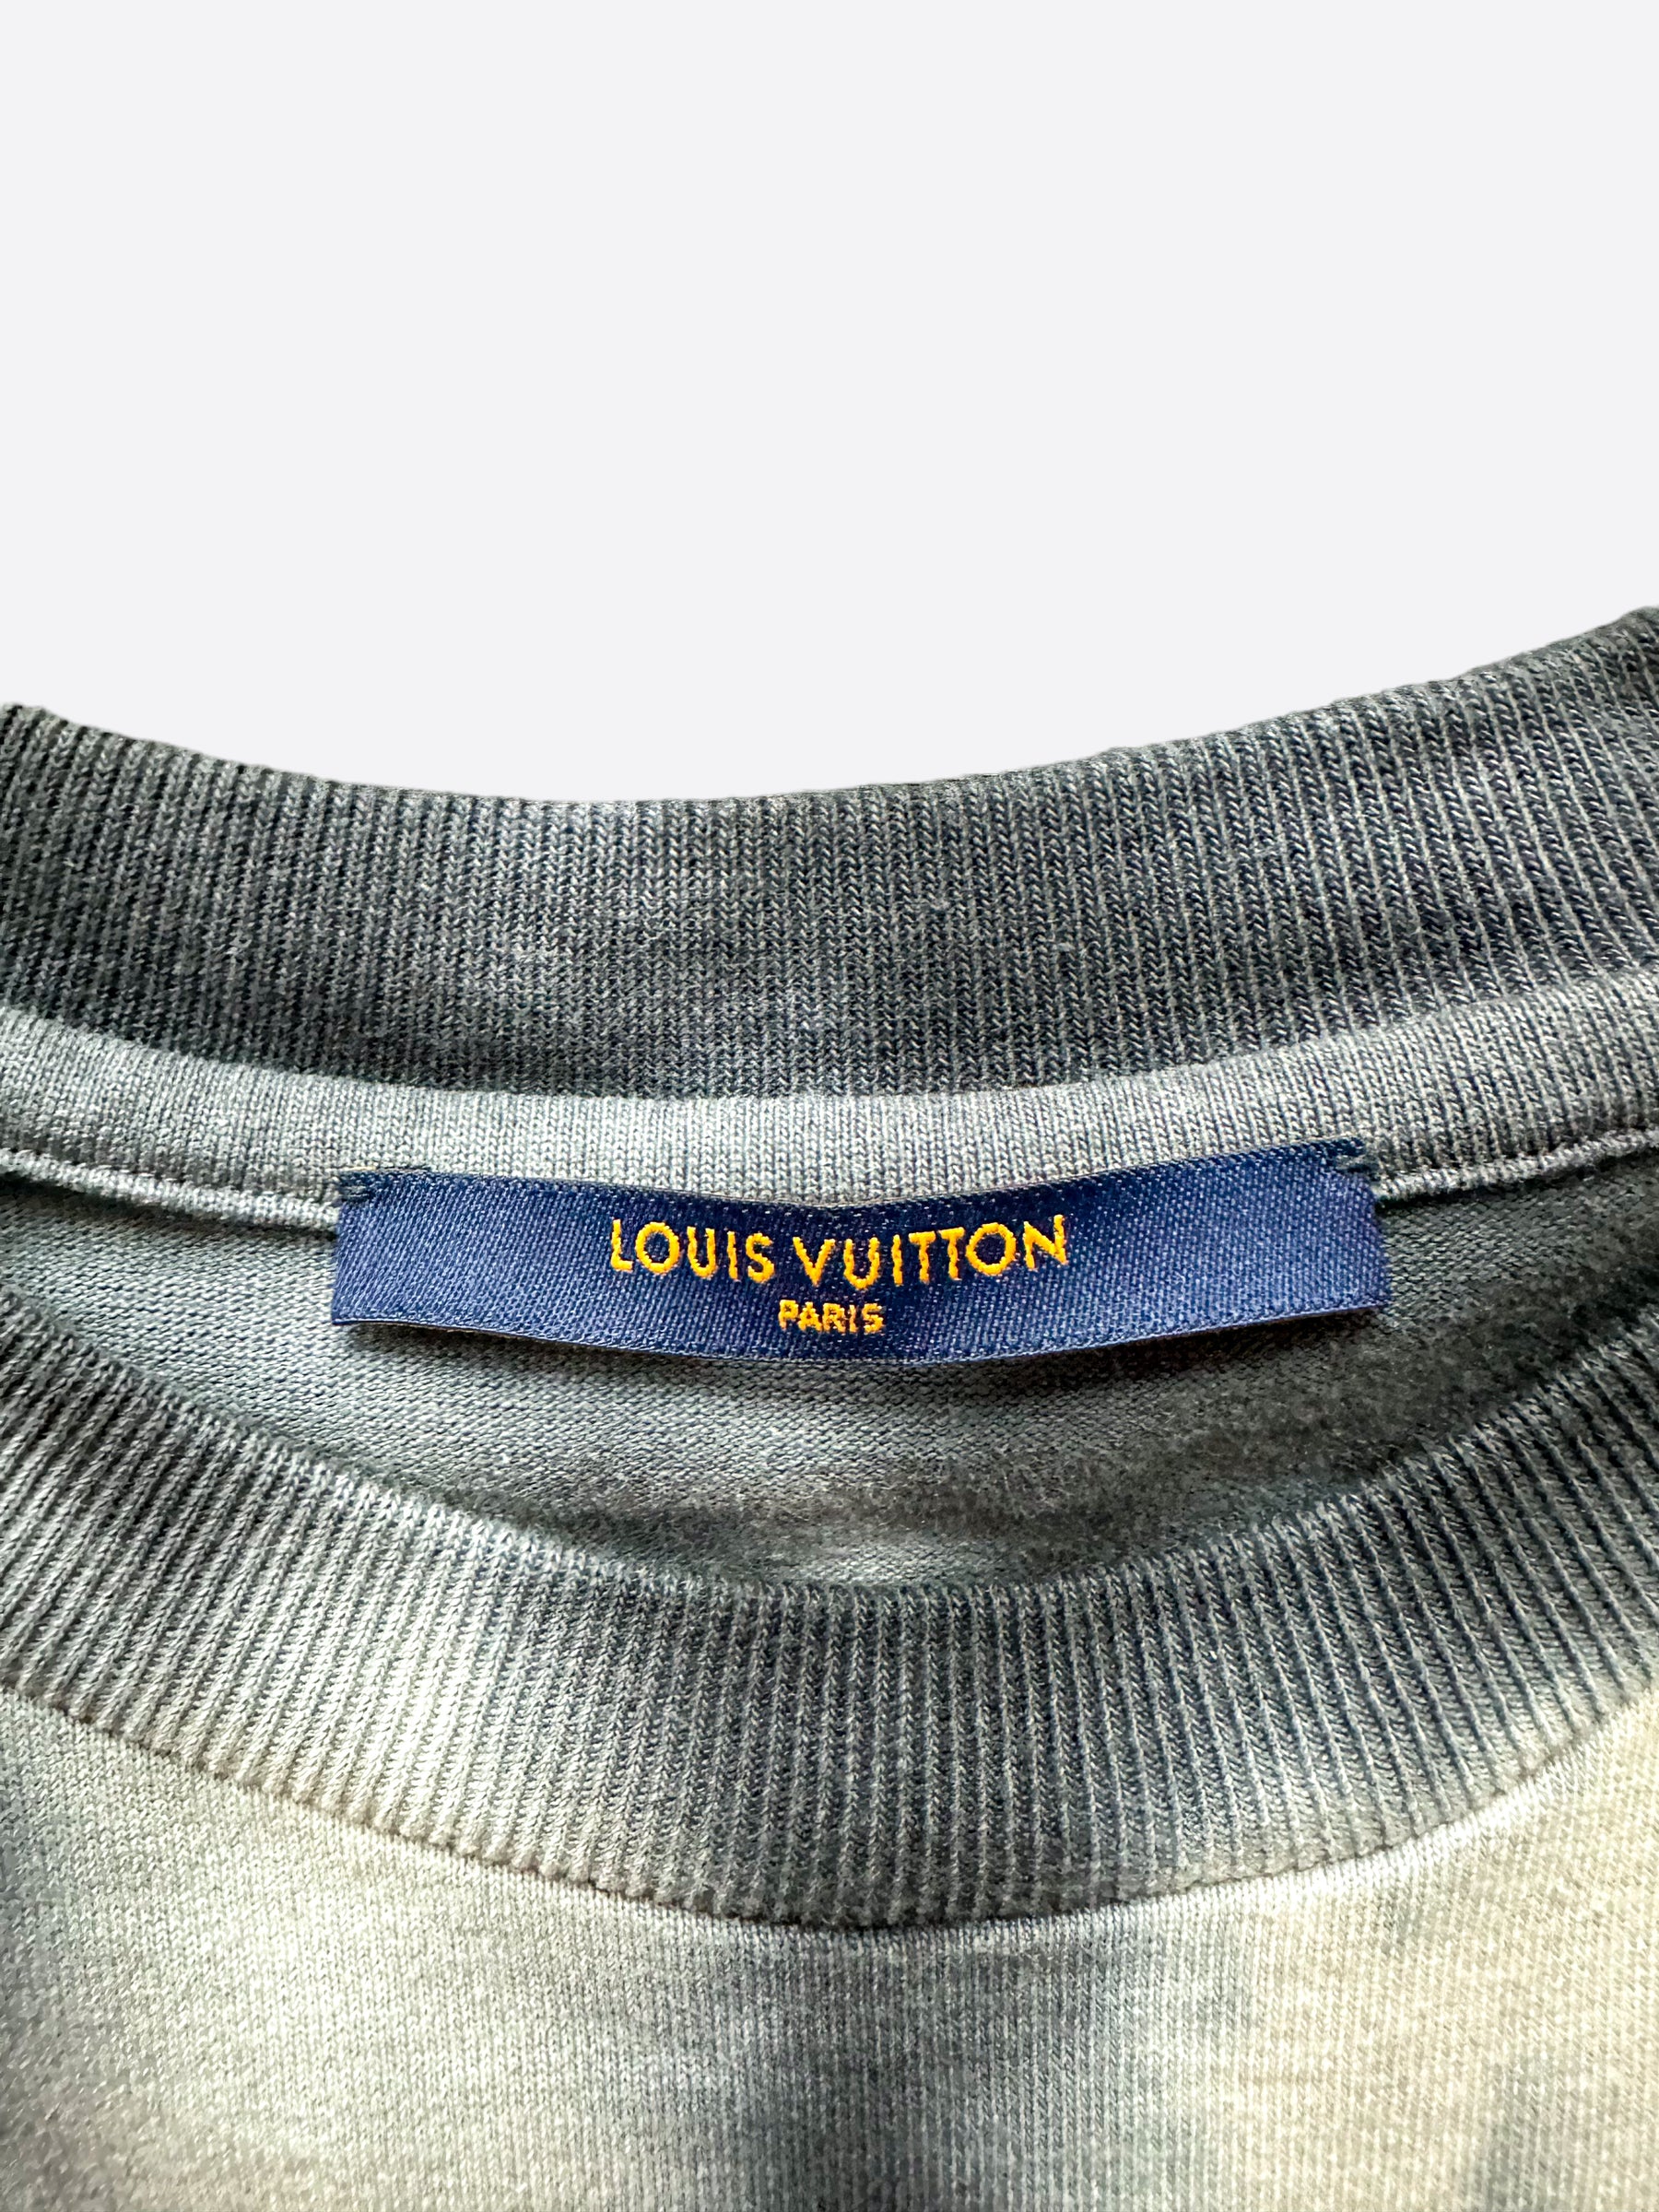 Louis Vuitton Tie -  Canada